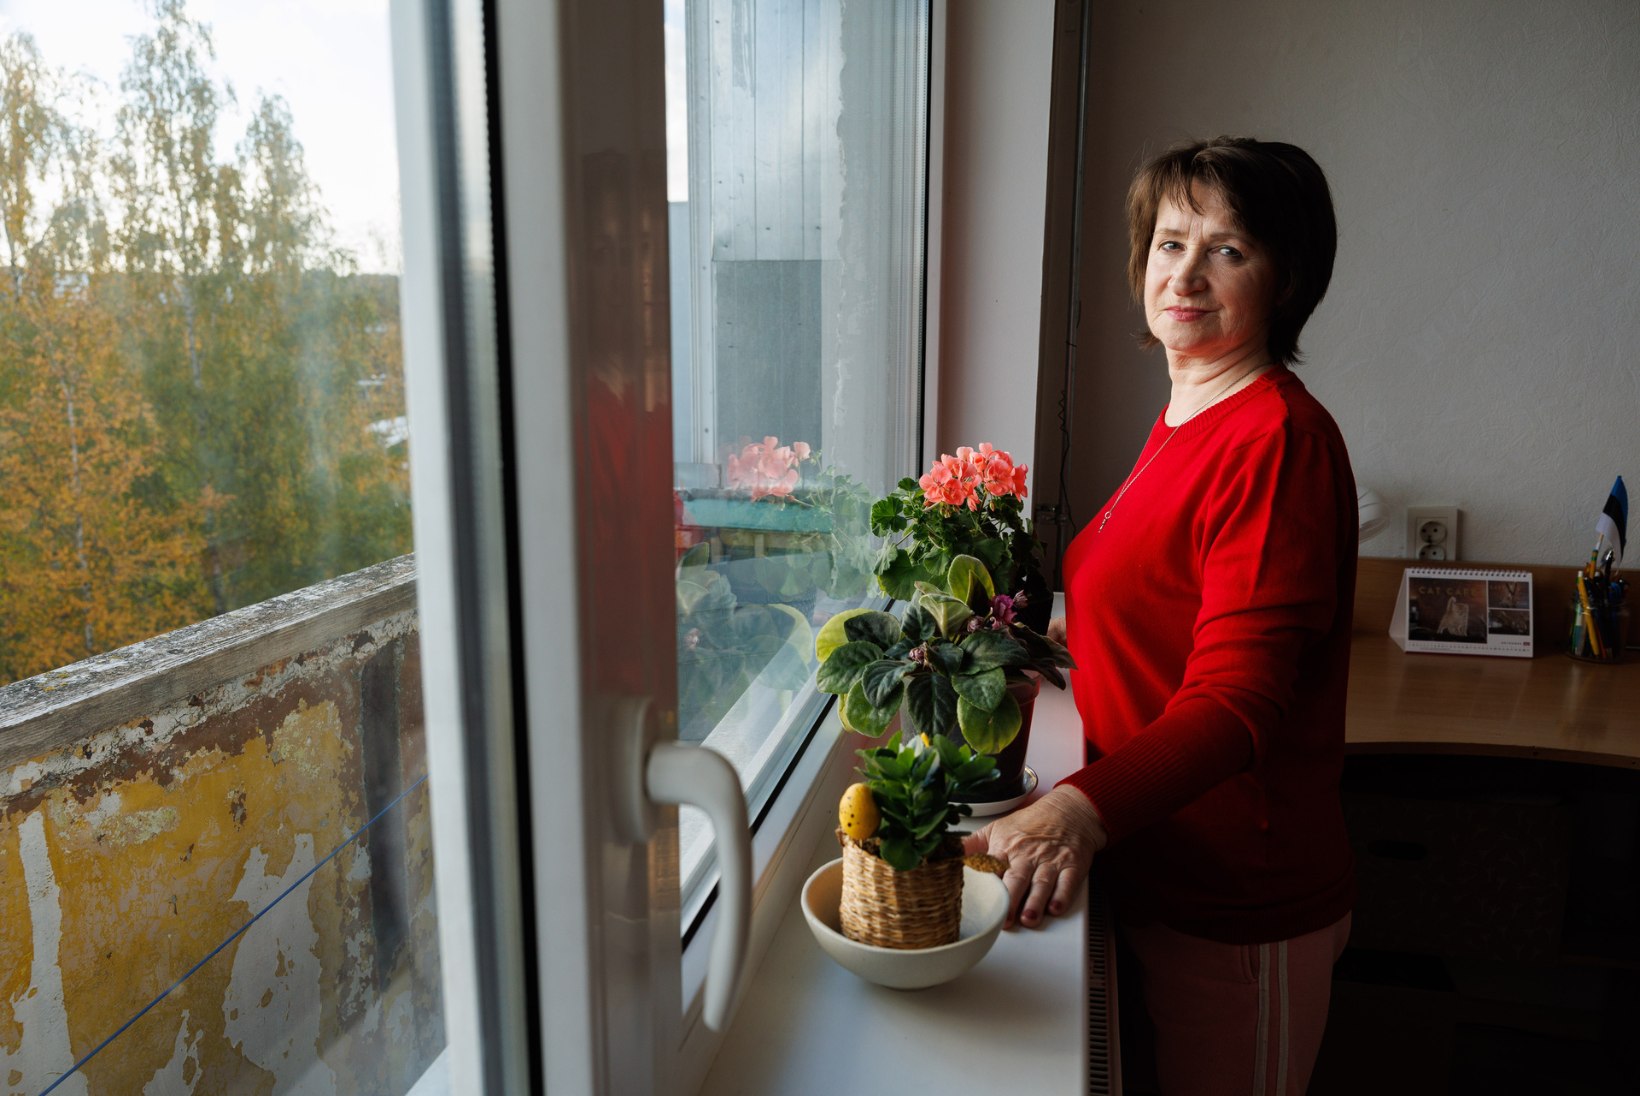 VÕTMED TASKUS, KUID MAJA ENAM POLE: ukrainlanna hakkas koduigatsuse leevendamiseks luuletama